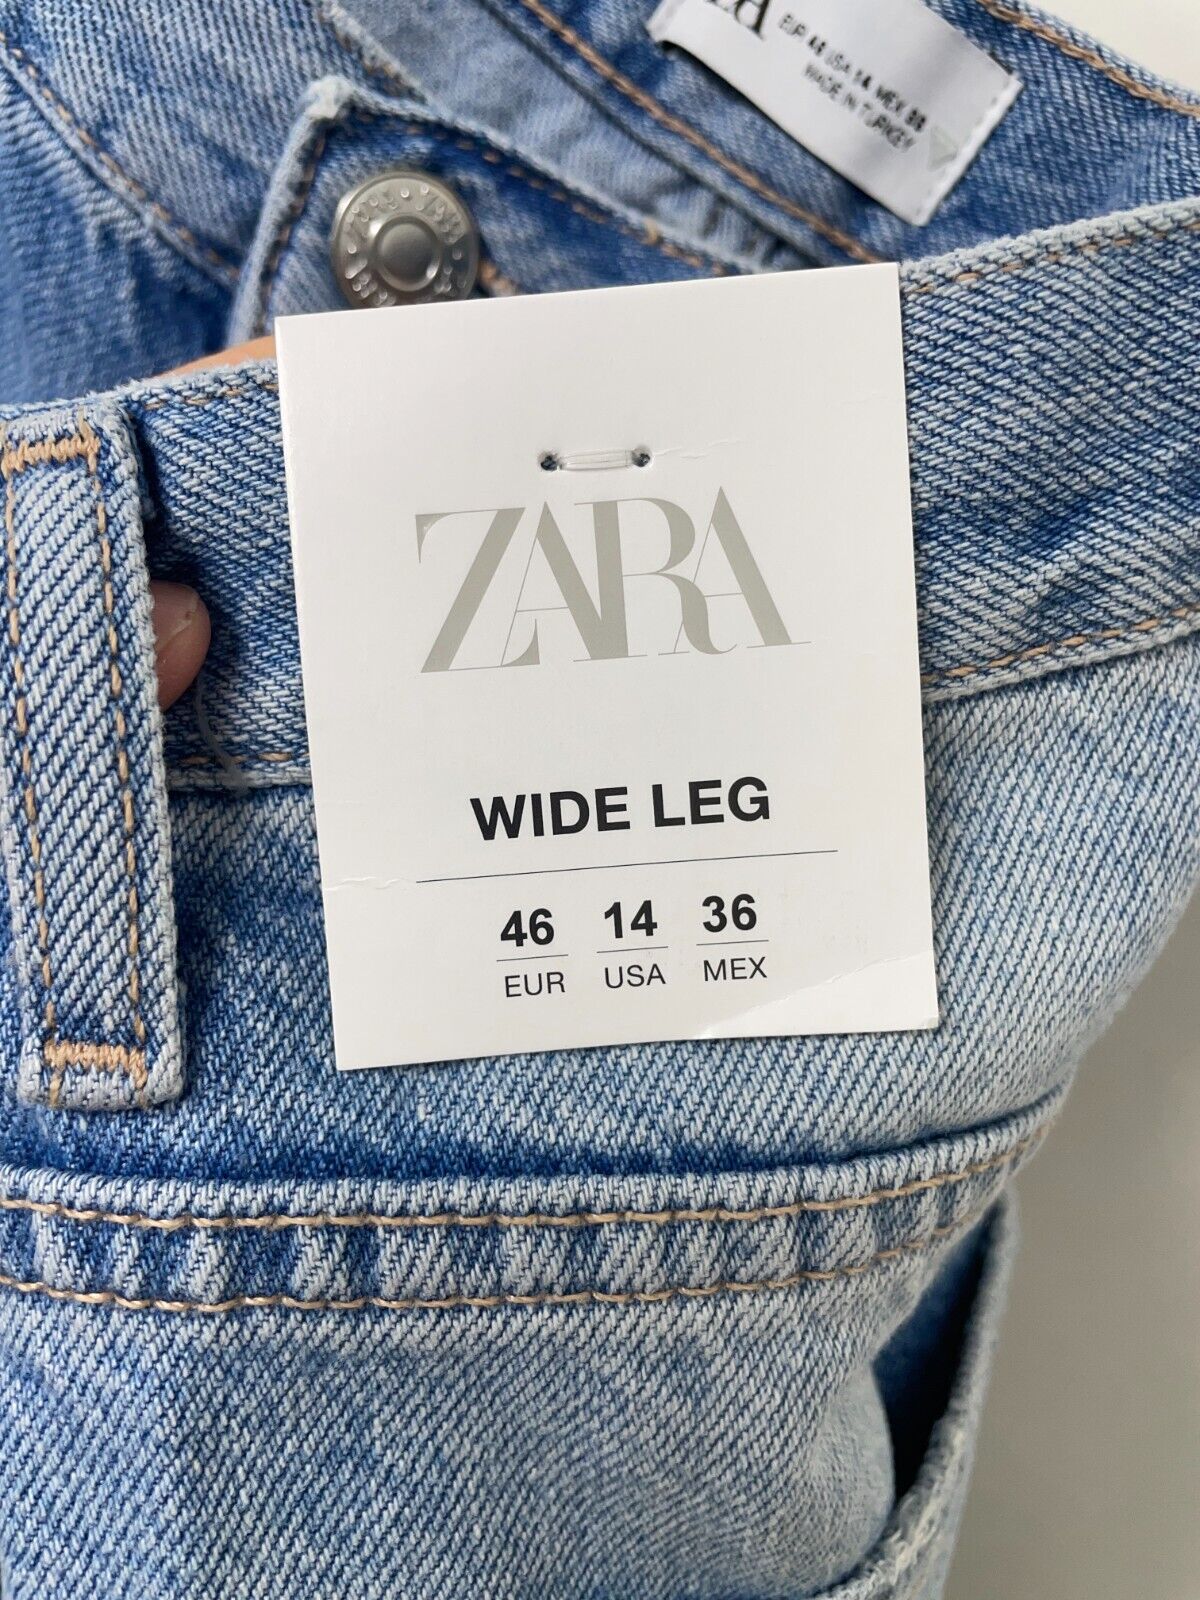 Zara Women's 14 Full Length TRF High Rise Wide Leg Jeans Light Blue 6688/025 NWT